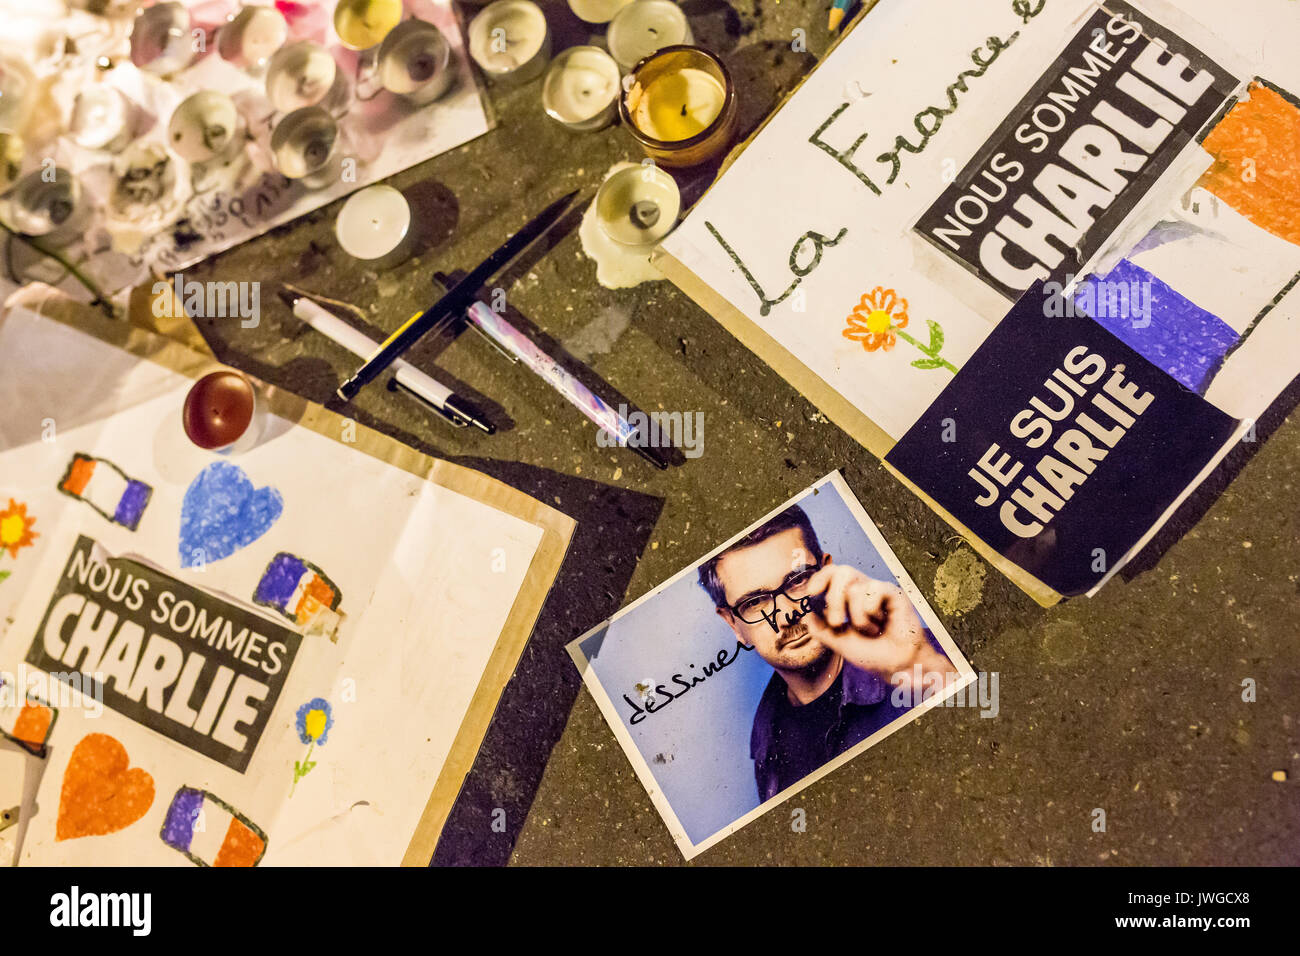 Photo de charb avec de tirer tue écrit dessus. Hommage aux victimes de meurtre Charlie Hebdo à Paris le 7 janvier 2015. Banque D'Images